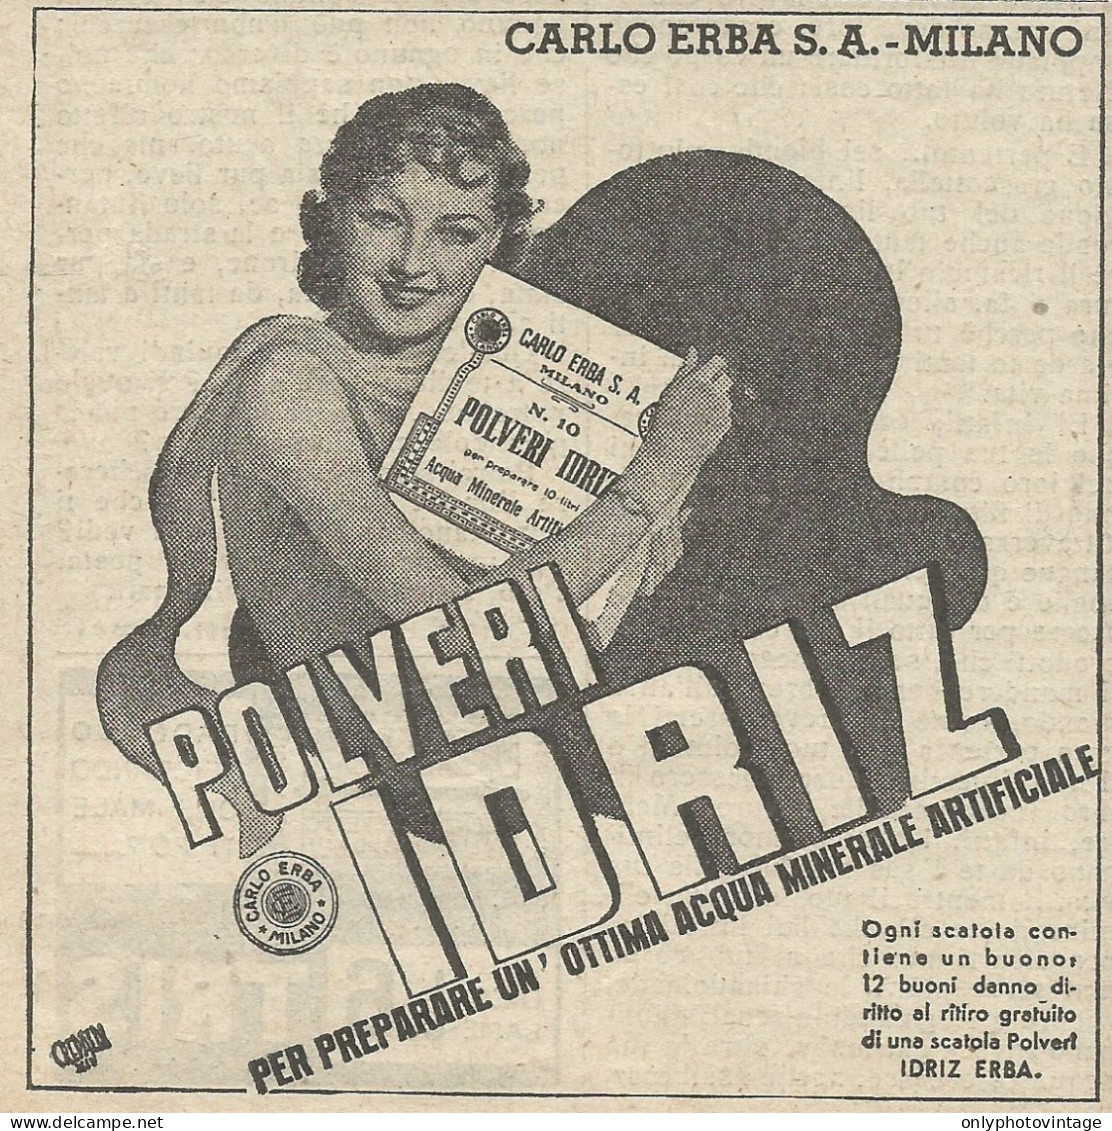 Polveri IDRIZ - Pubblicità 1936 - Advertising - Advertising